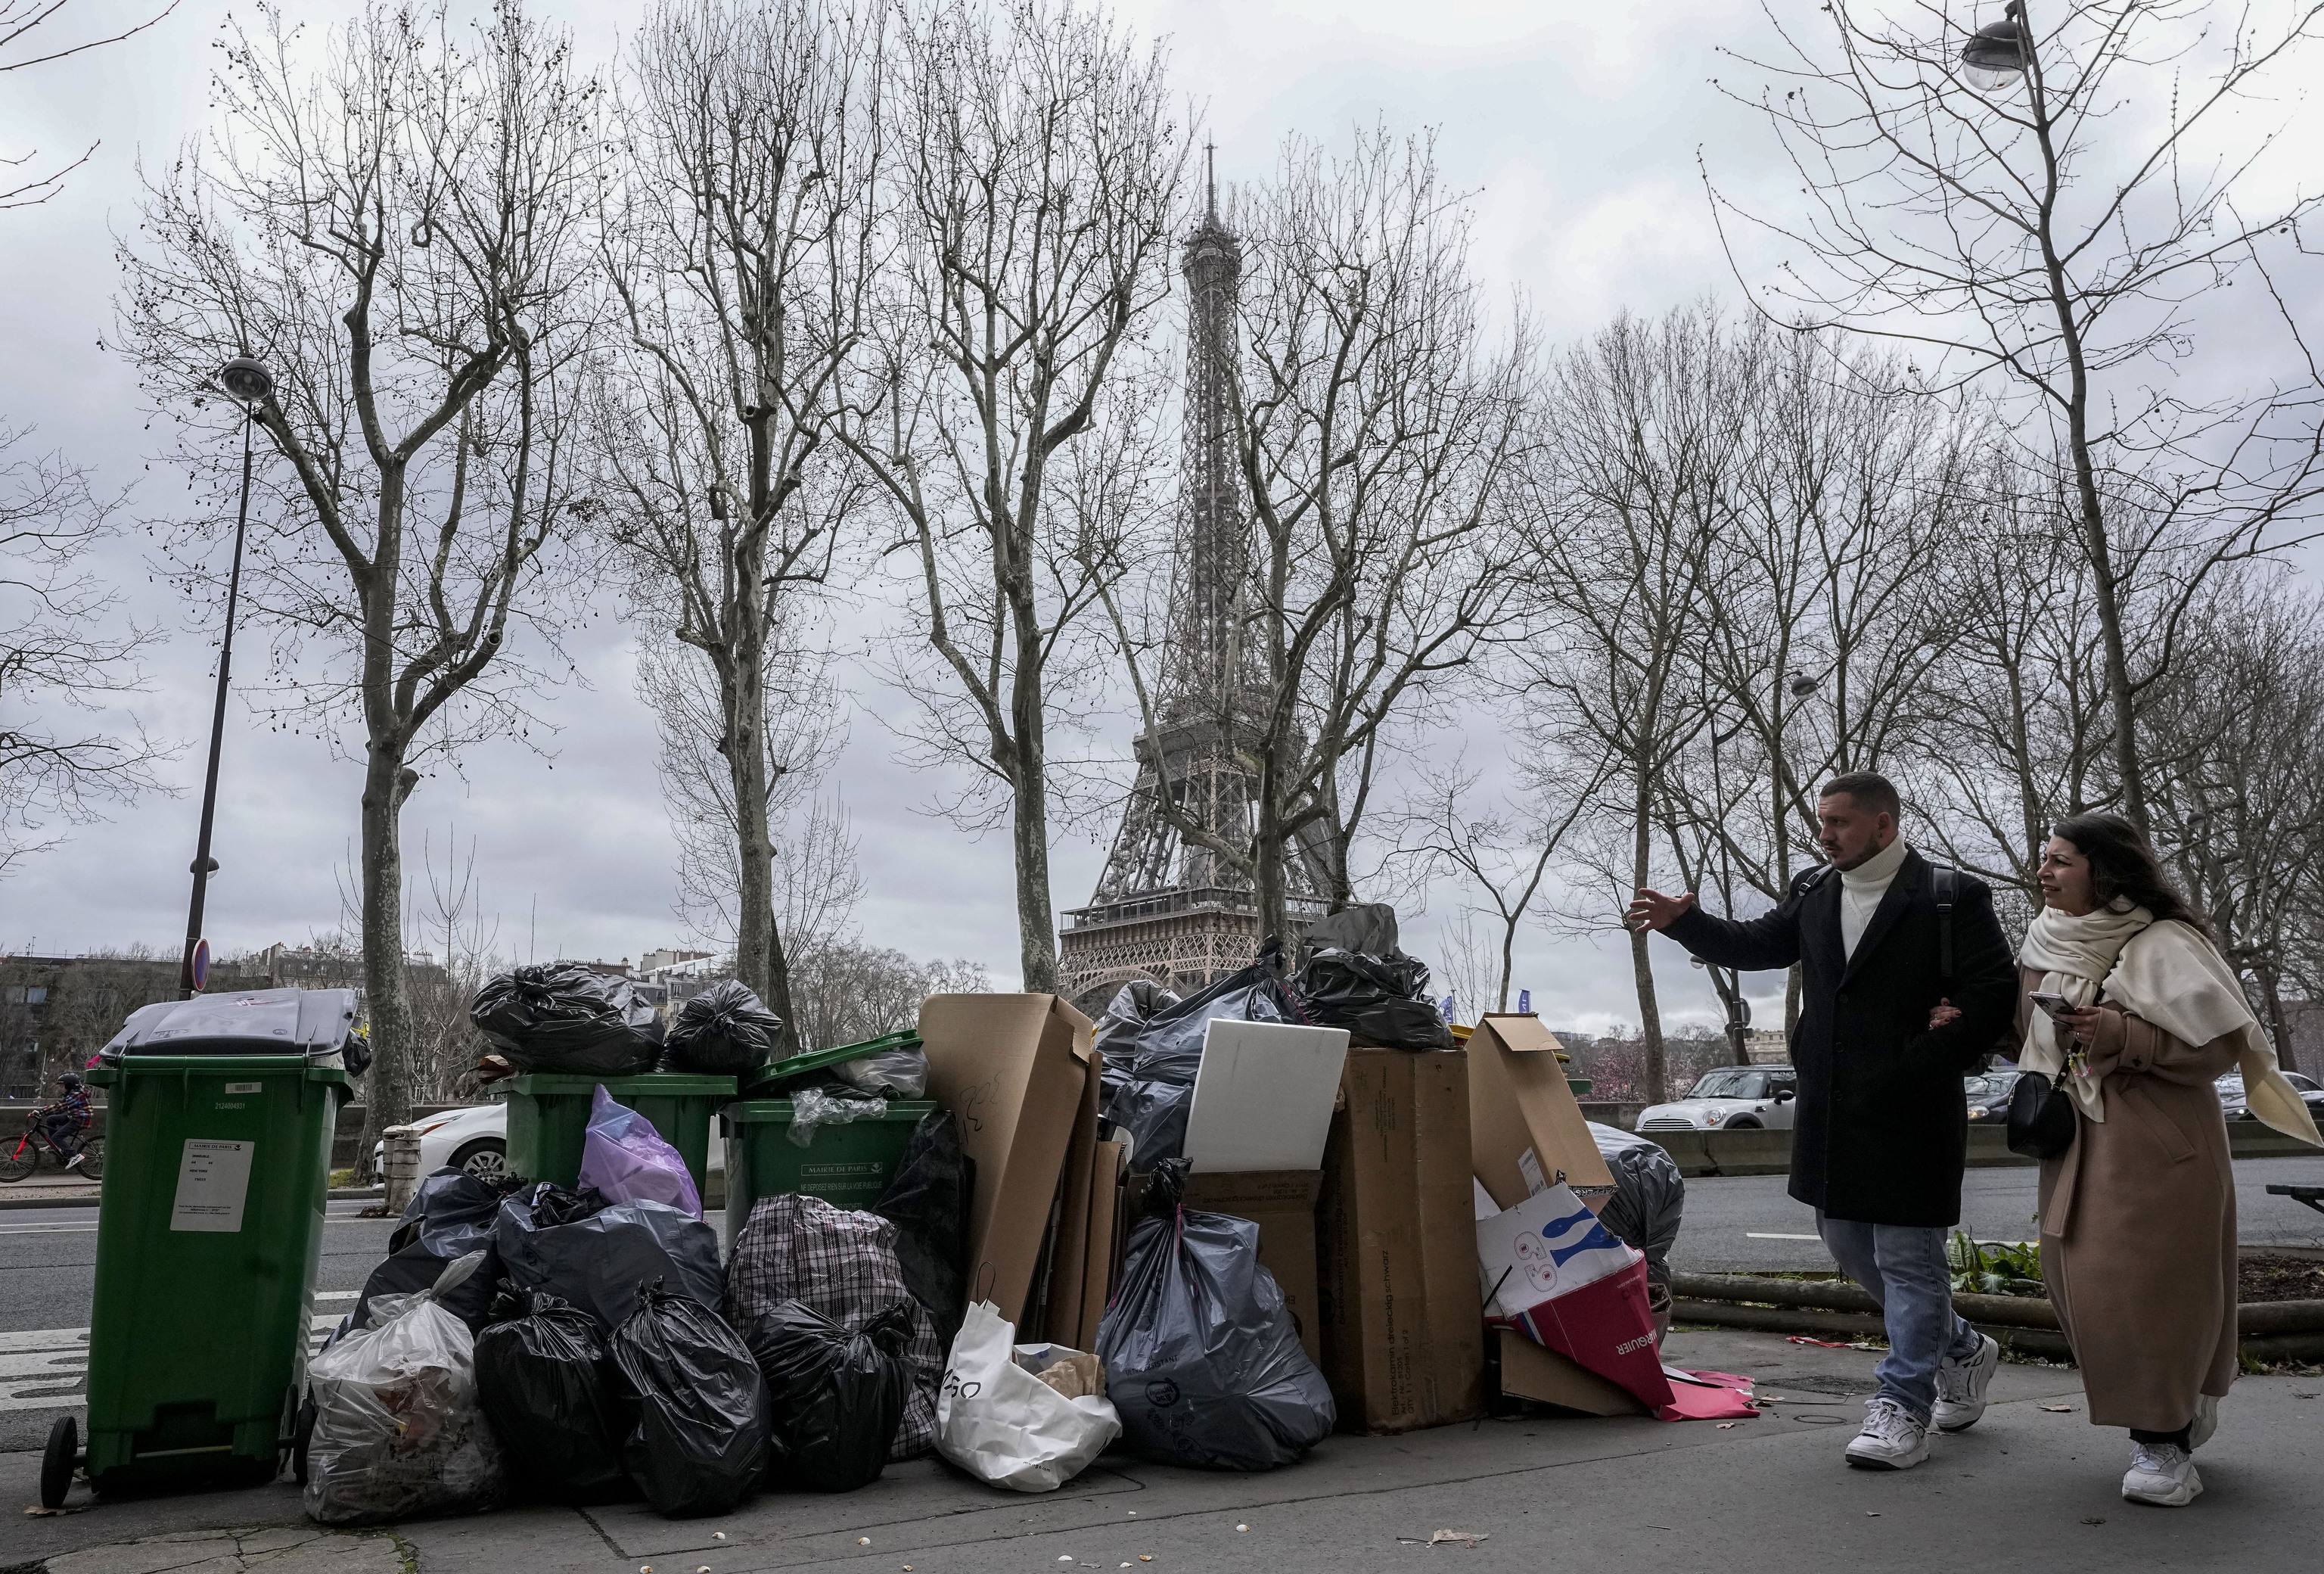 Basura acumulada cerca de la torre Eiffel de París.